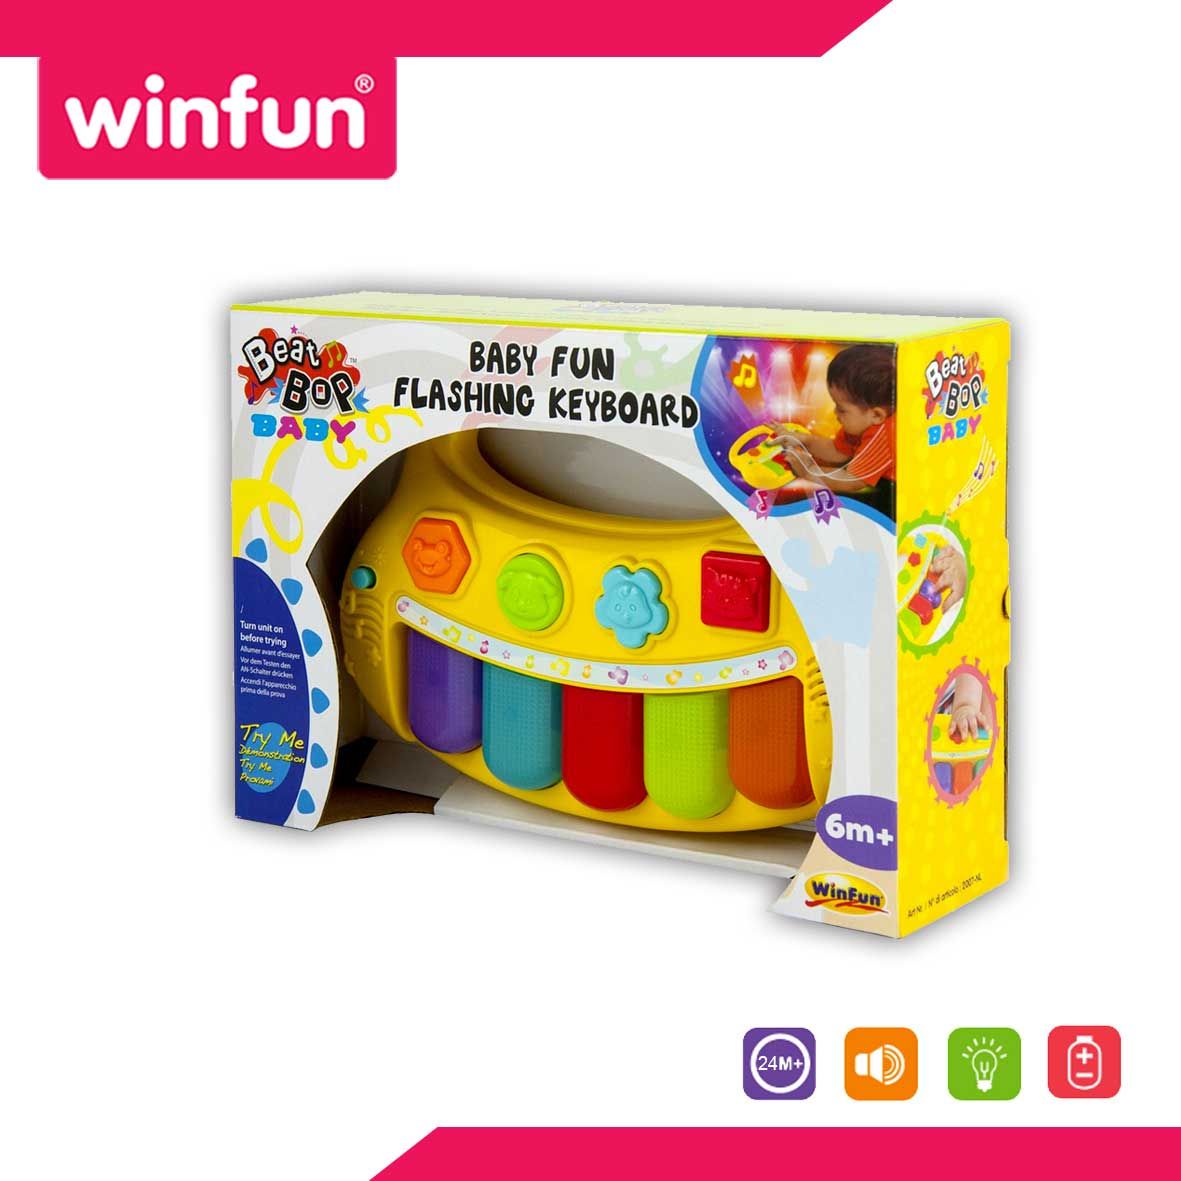 Winfun Baby Fun Flashing Keyboard - 1